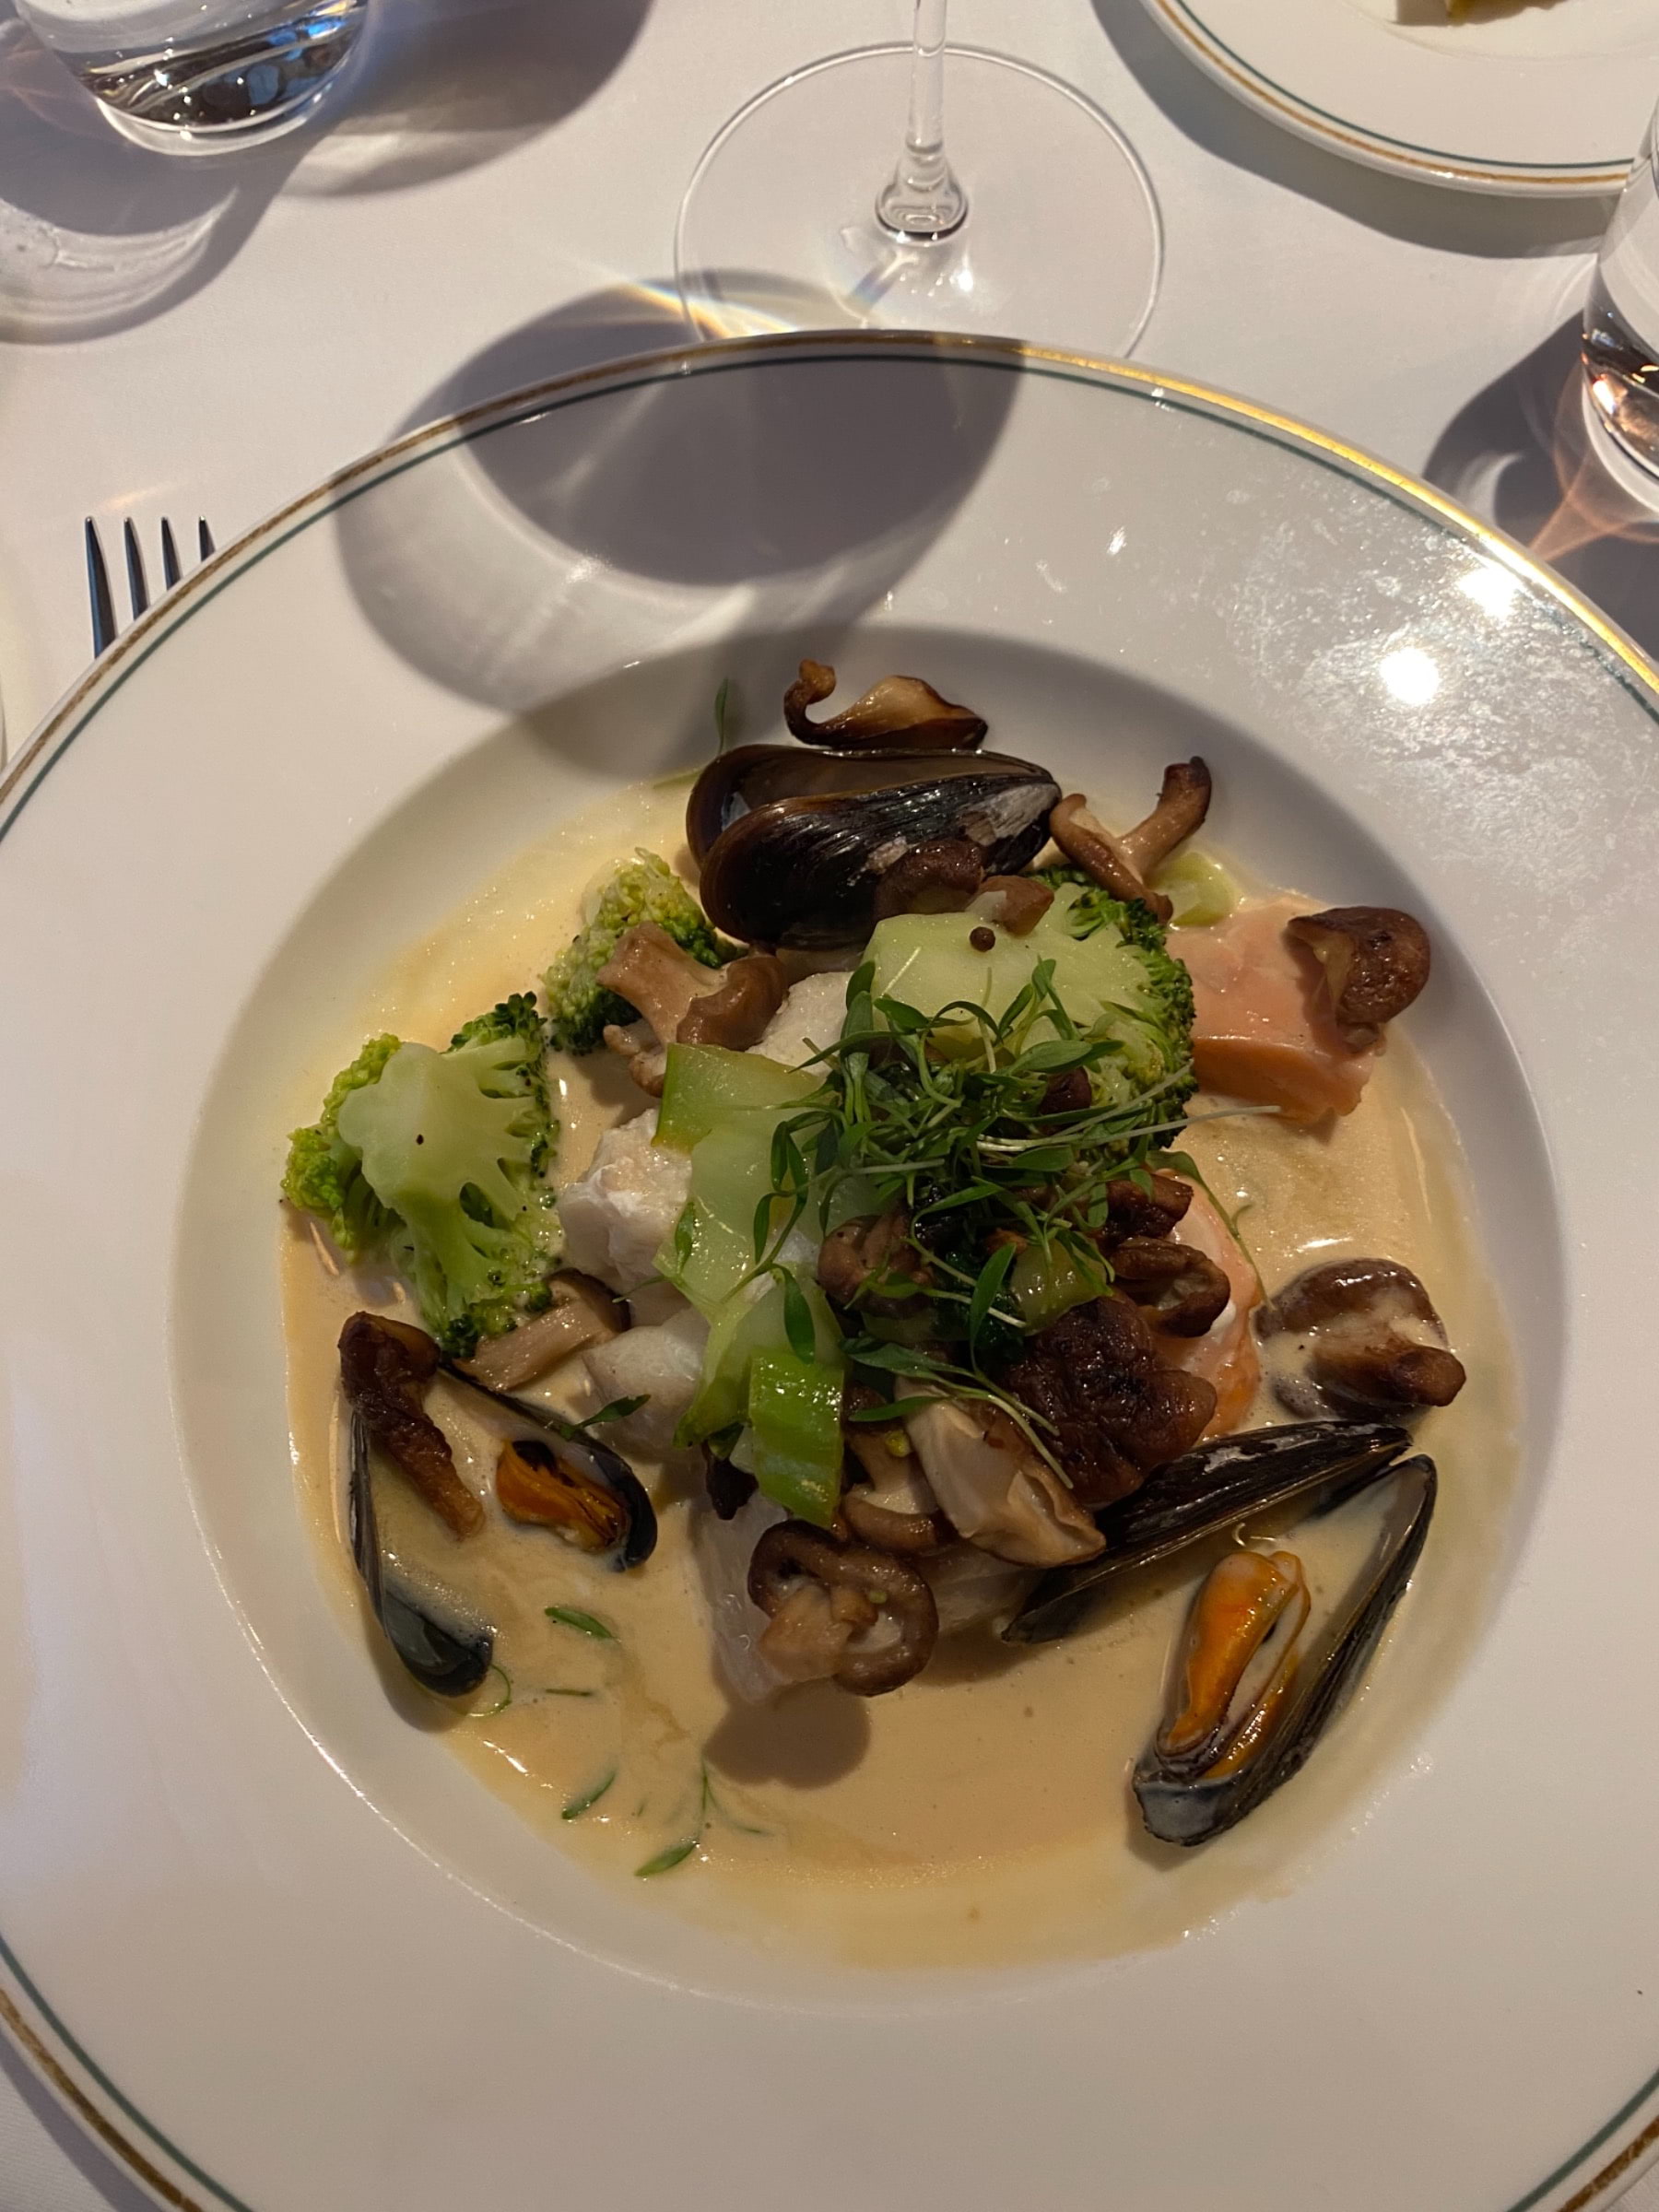 Dagens fisksoppa med torsk, lax, musslor och broccoli.  – Photo from Brasserie Astoria by Sofie L. (23/11/2021)